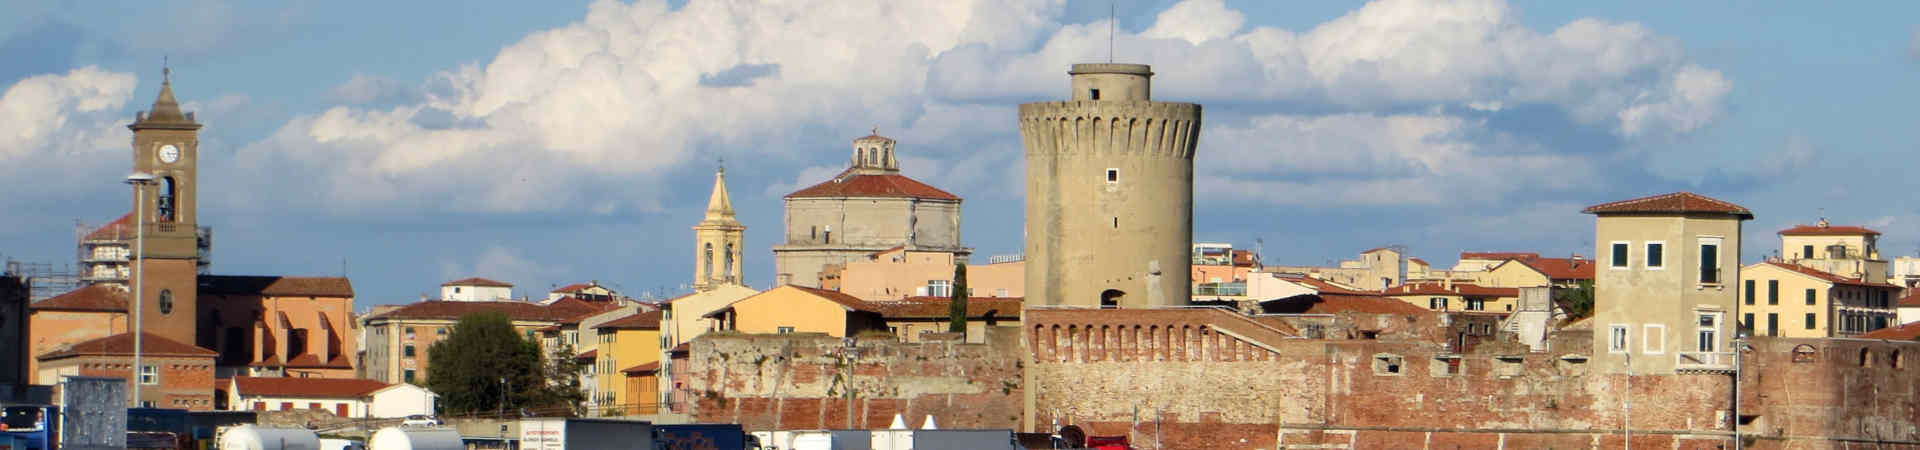 Imagen recurso del puerto de destino Livorno para la ruta en ferry Olbia - Livorno